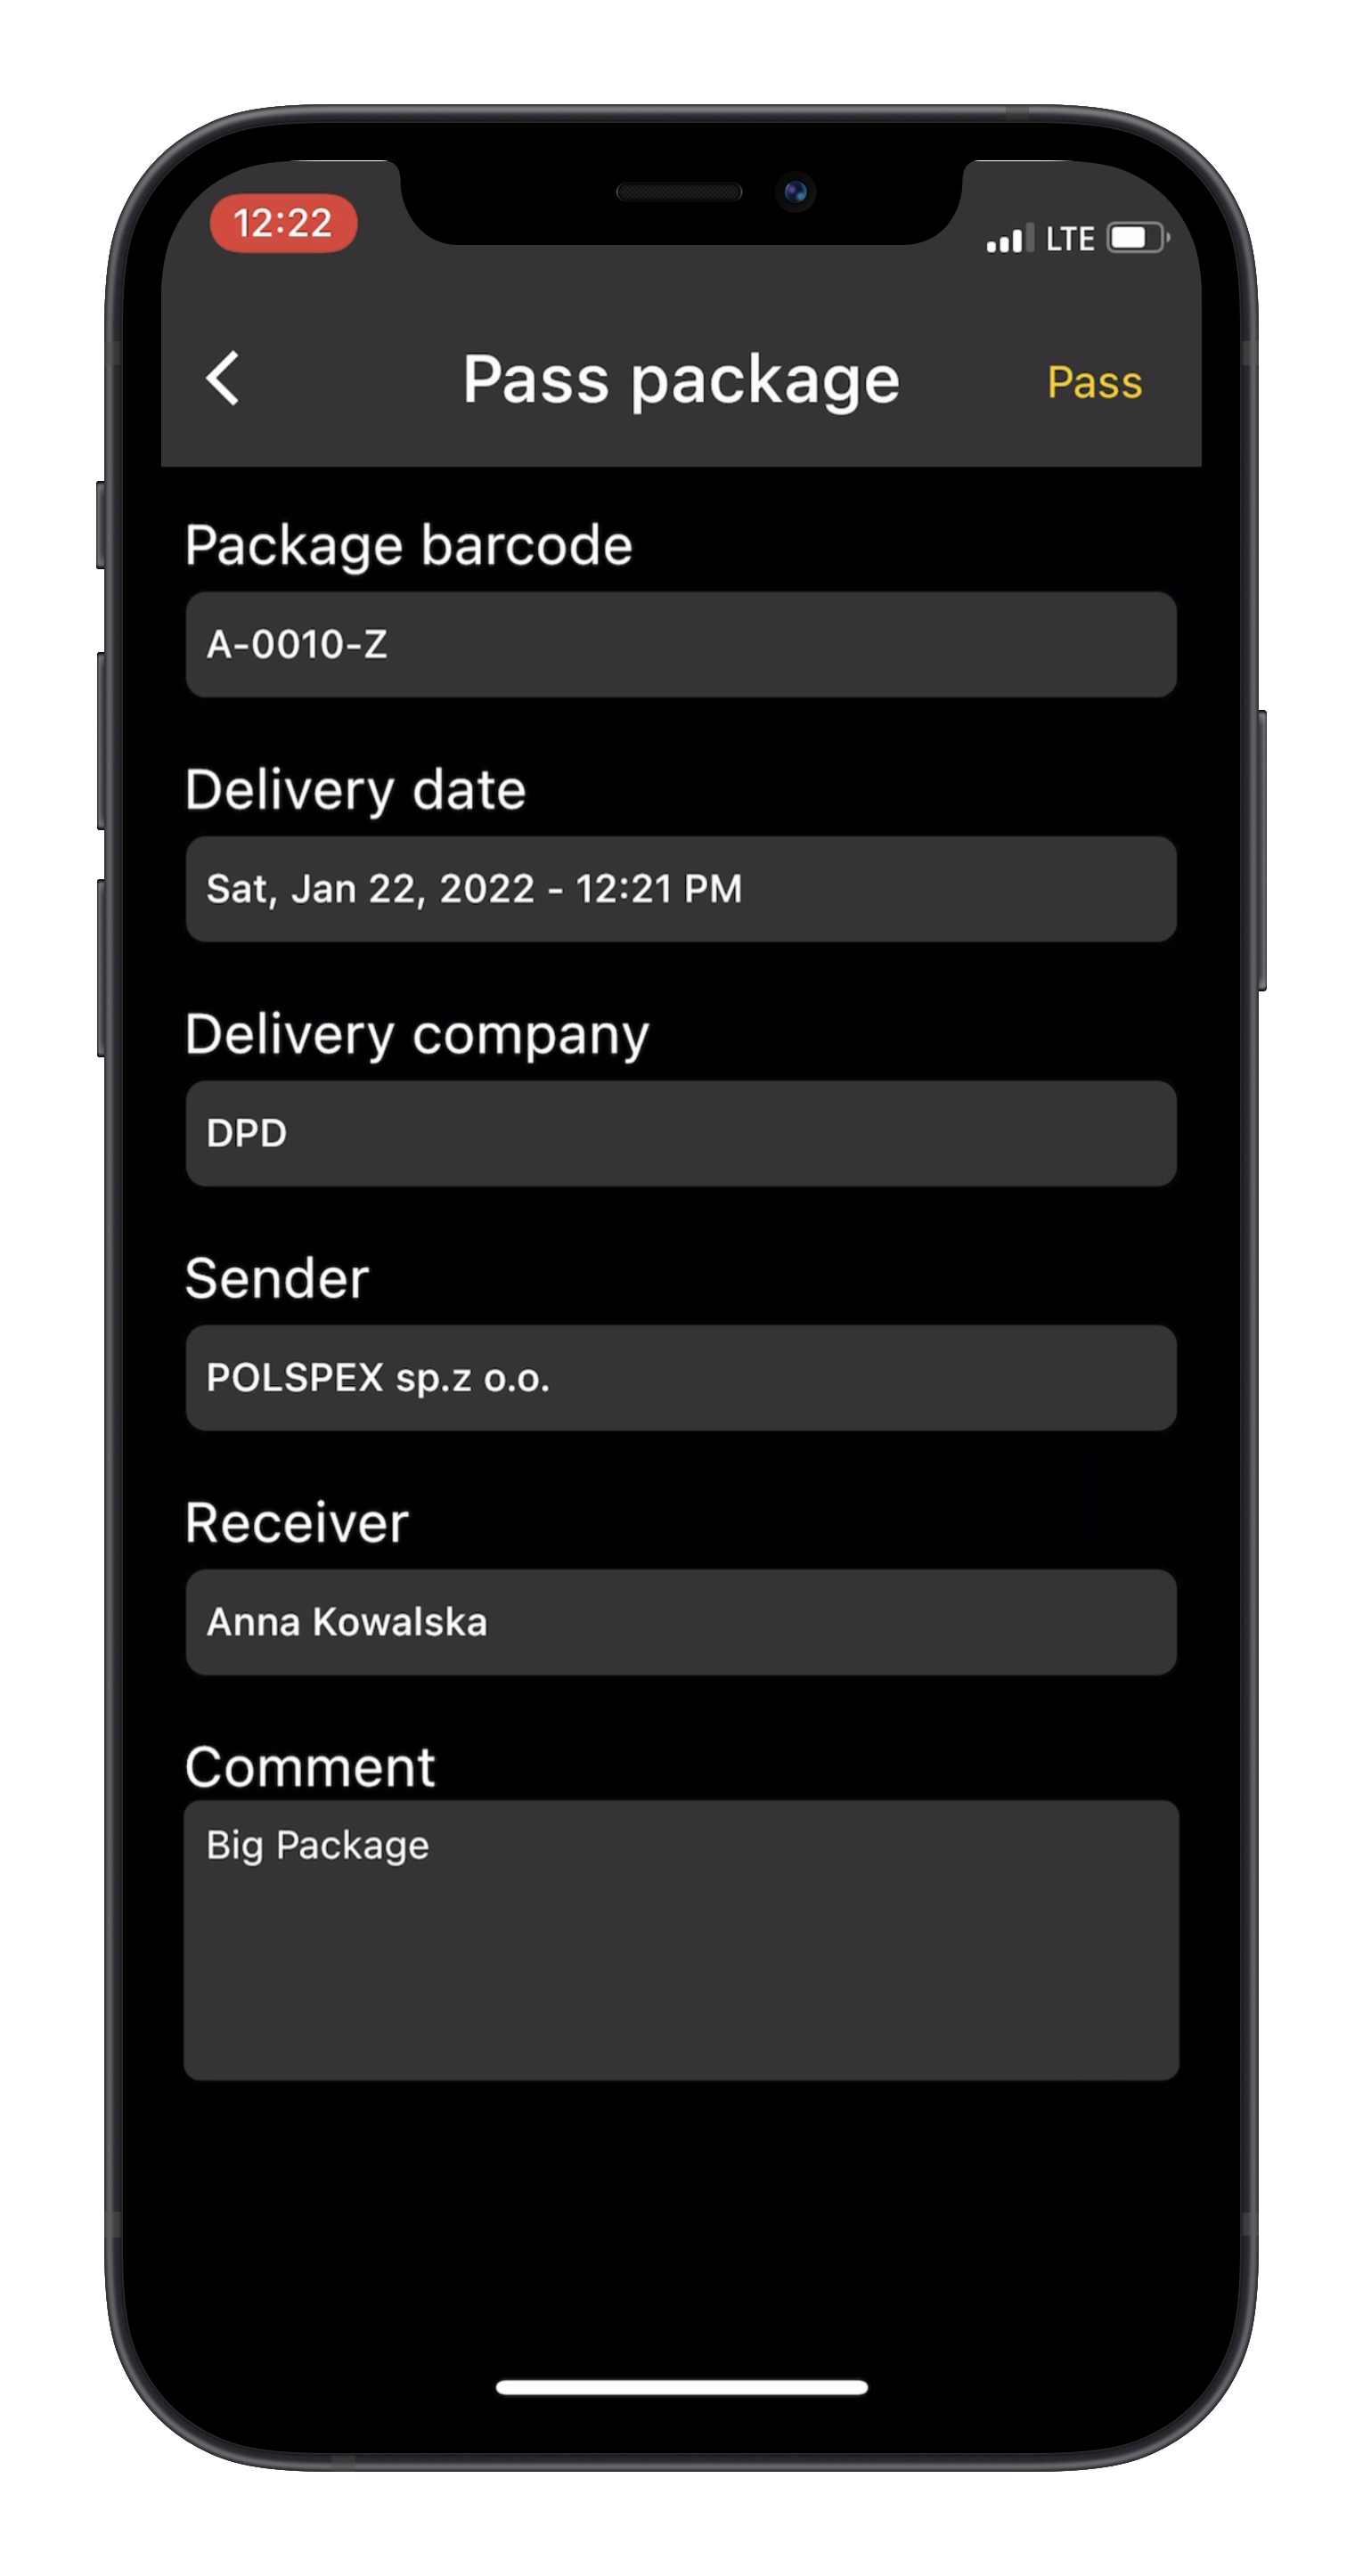 Flutter app for managing delivered packages in office